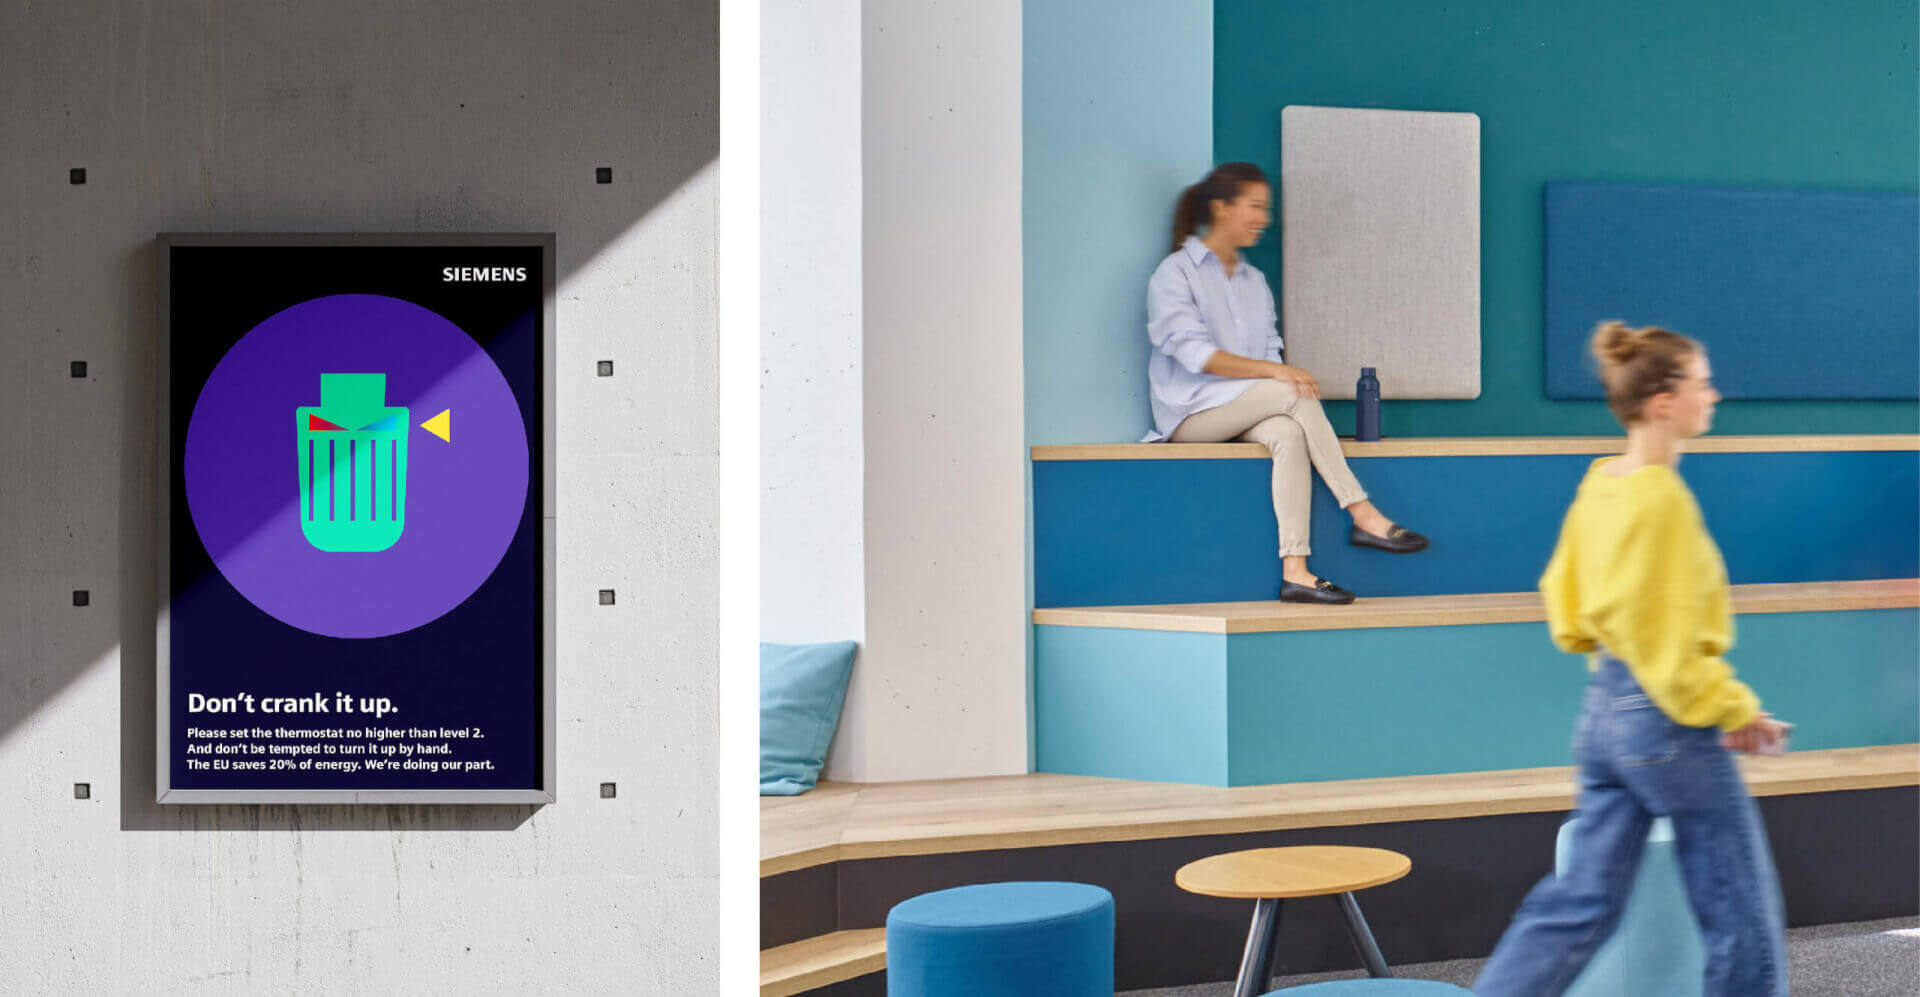 Abbildung einer Collage bestehend aus 2 Bildern. Auf dem linken Bild ist ein dunkelblaues Plakat auf einer Betonwand abgebildet. Auf dem rechten Bild werden Räumlichkeiten in dargestellt. Im Vordergrund läuft eine Frau durchs Bild.